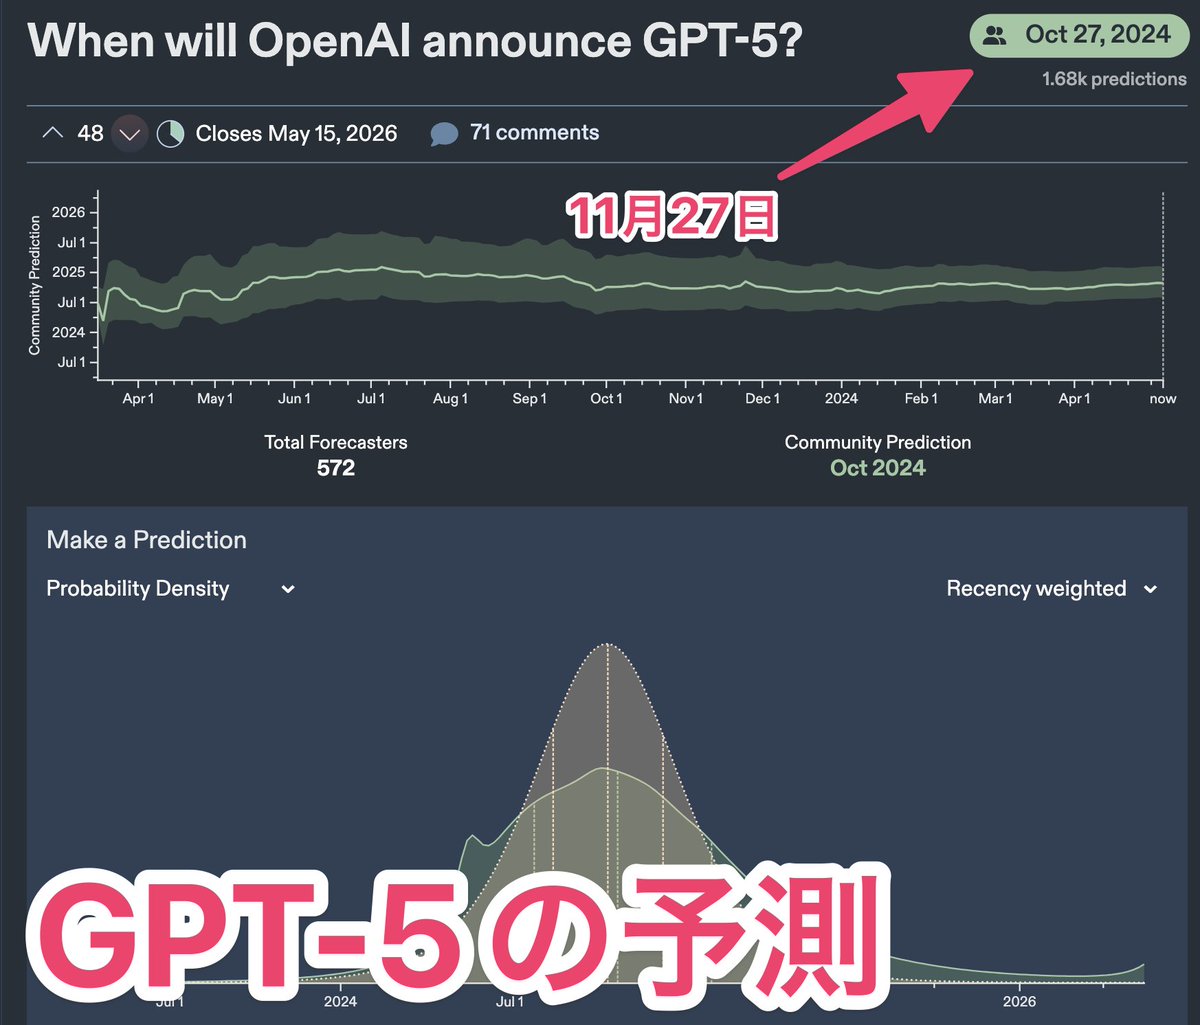 GPT-5発表は「11月27日」
Soraリリースは「来年の1月7日」
ㅤ
大規模予測集約サイト「Metaculus」の結果が面白い
ㅤ
・GPT-5の'リリース'は12月30日に
・Soraは11月5日の大統領選挙に配慮する説が強い
・GPT-4.5は例の如く「6月リリース」が濃厚。
　GPT-3.5から4の間が4ヶ月程度ということは...？